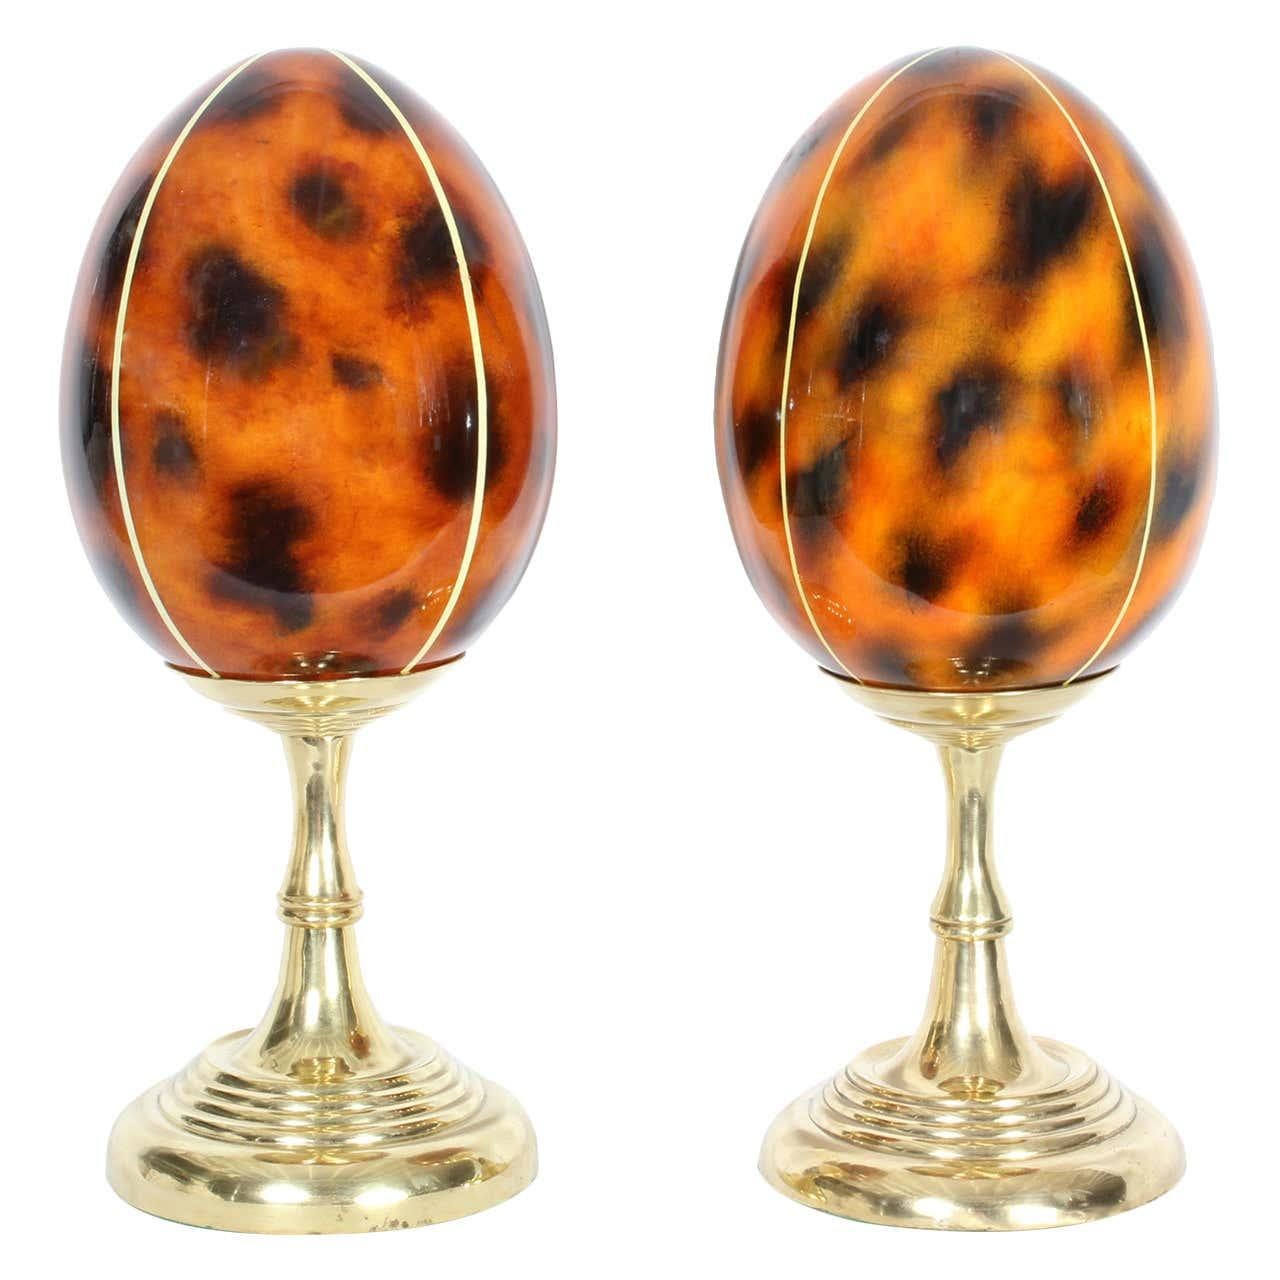 Une paire d'objets d'art en forme d'œuf en fausse écaille de tortue laquée sur des piédestaux tournés en laiton massif, avec une ambiance de chandelier. Aucune maison n'est complète sans elles.
Probablement de Maitland - Smith. Nouvellement